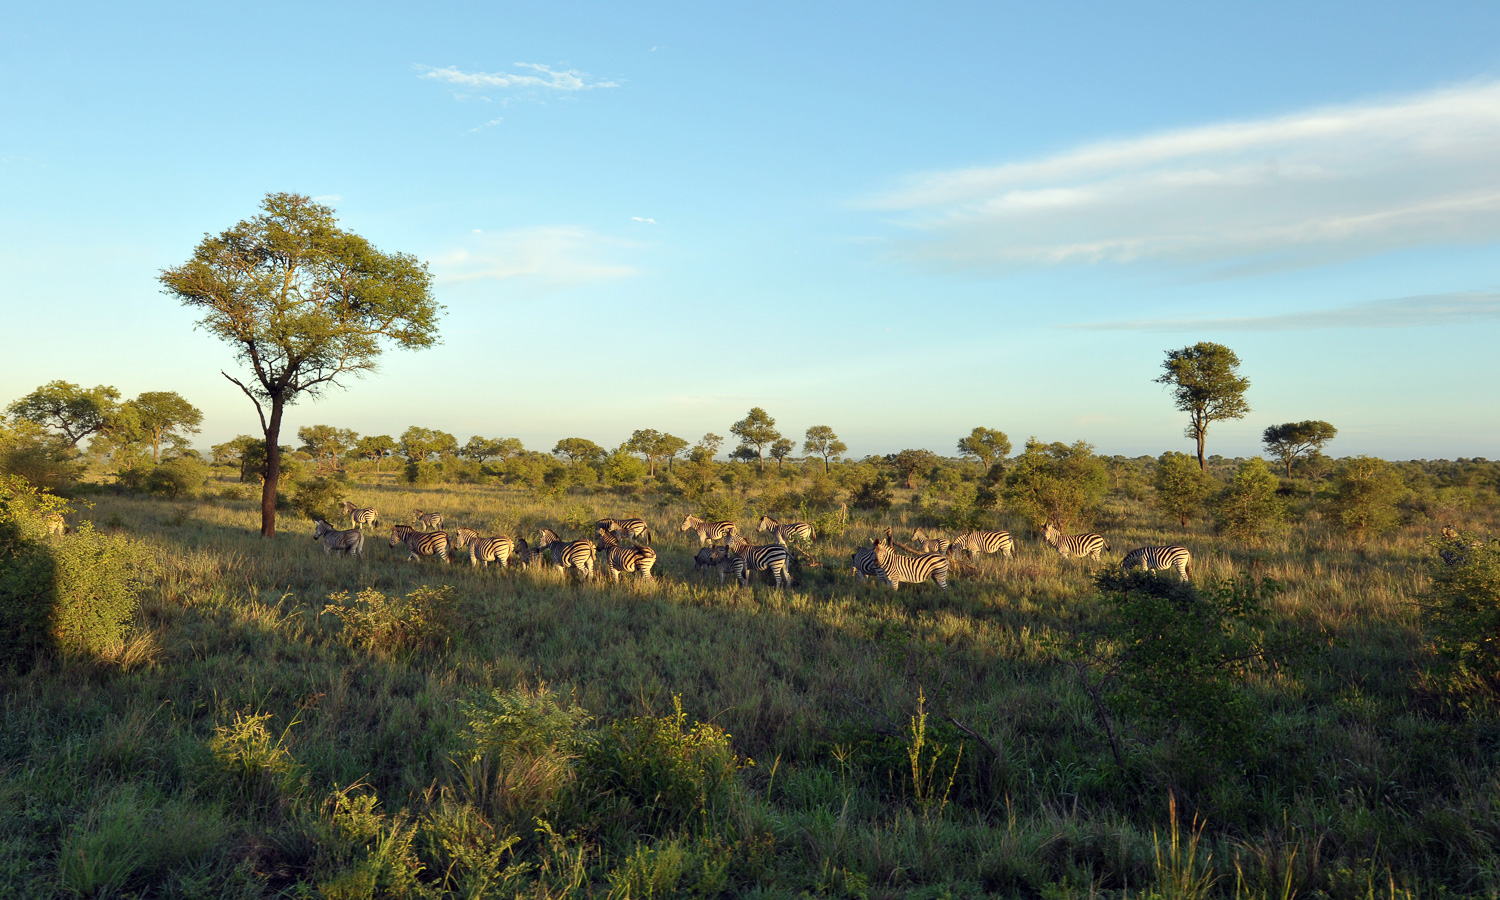 Kruger National Park [24 mm, 1/500 sec at f / 7.1, ISO 800]